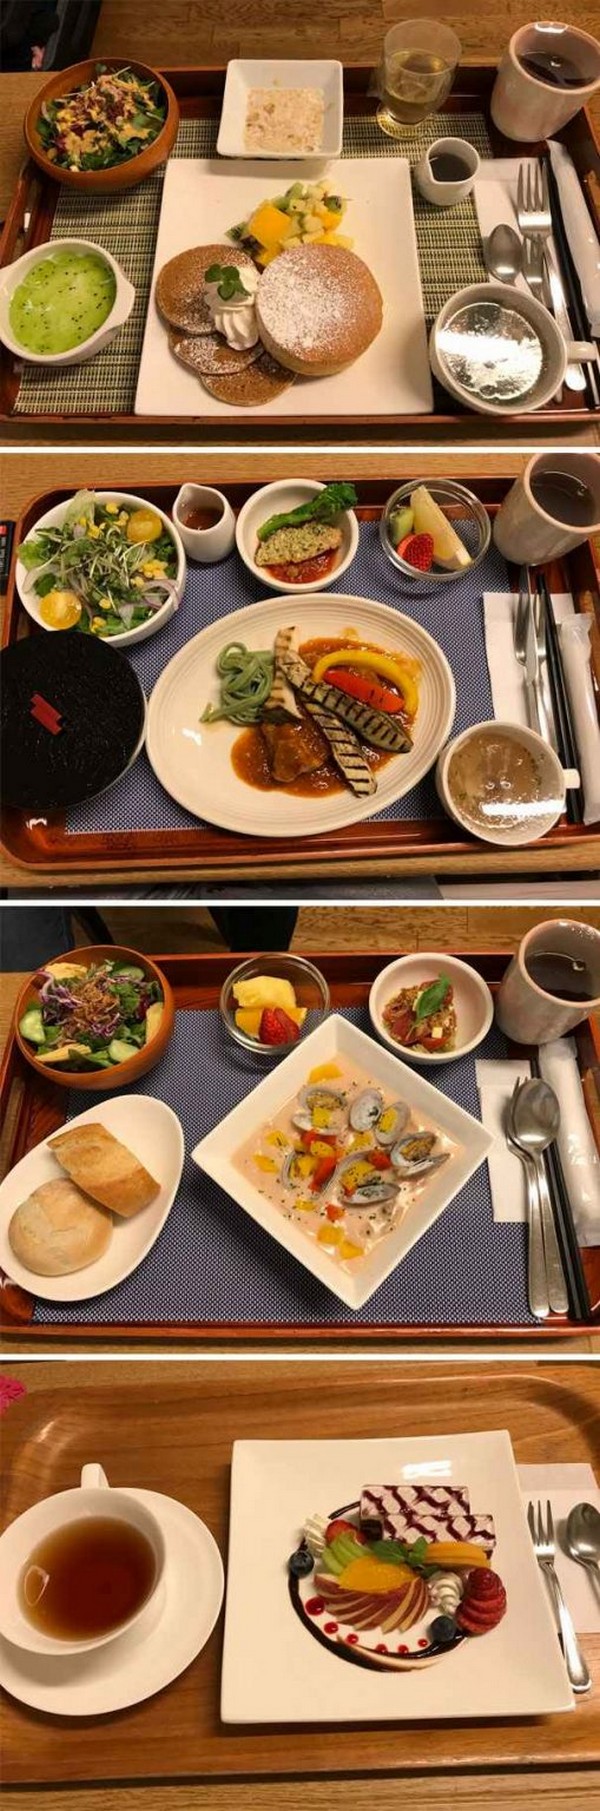 İnanılır gibi değil ama bunlar Japonya’daki hastane yemeği seçenekleri! Bunları ülkemizdeki hastane yemeğiyle karşılaştırınca biraz üzüldük açıkçası